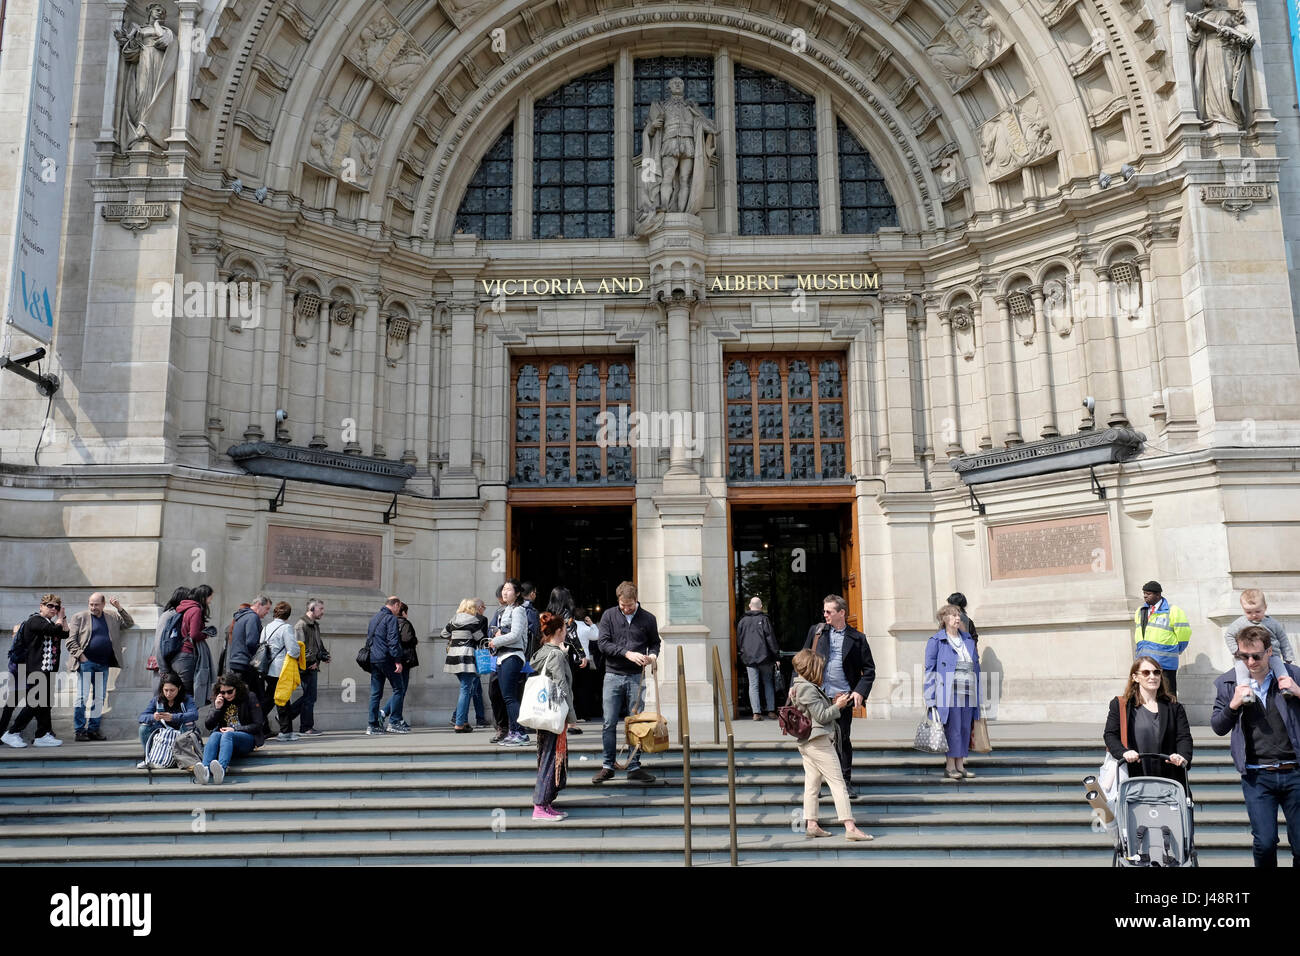 Una vista de la entrada principal del Victoria and Albert Museum en South Kensington, Londres, Reino Unido. Foto de stock